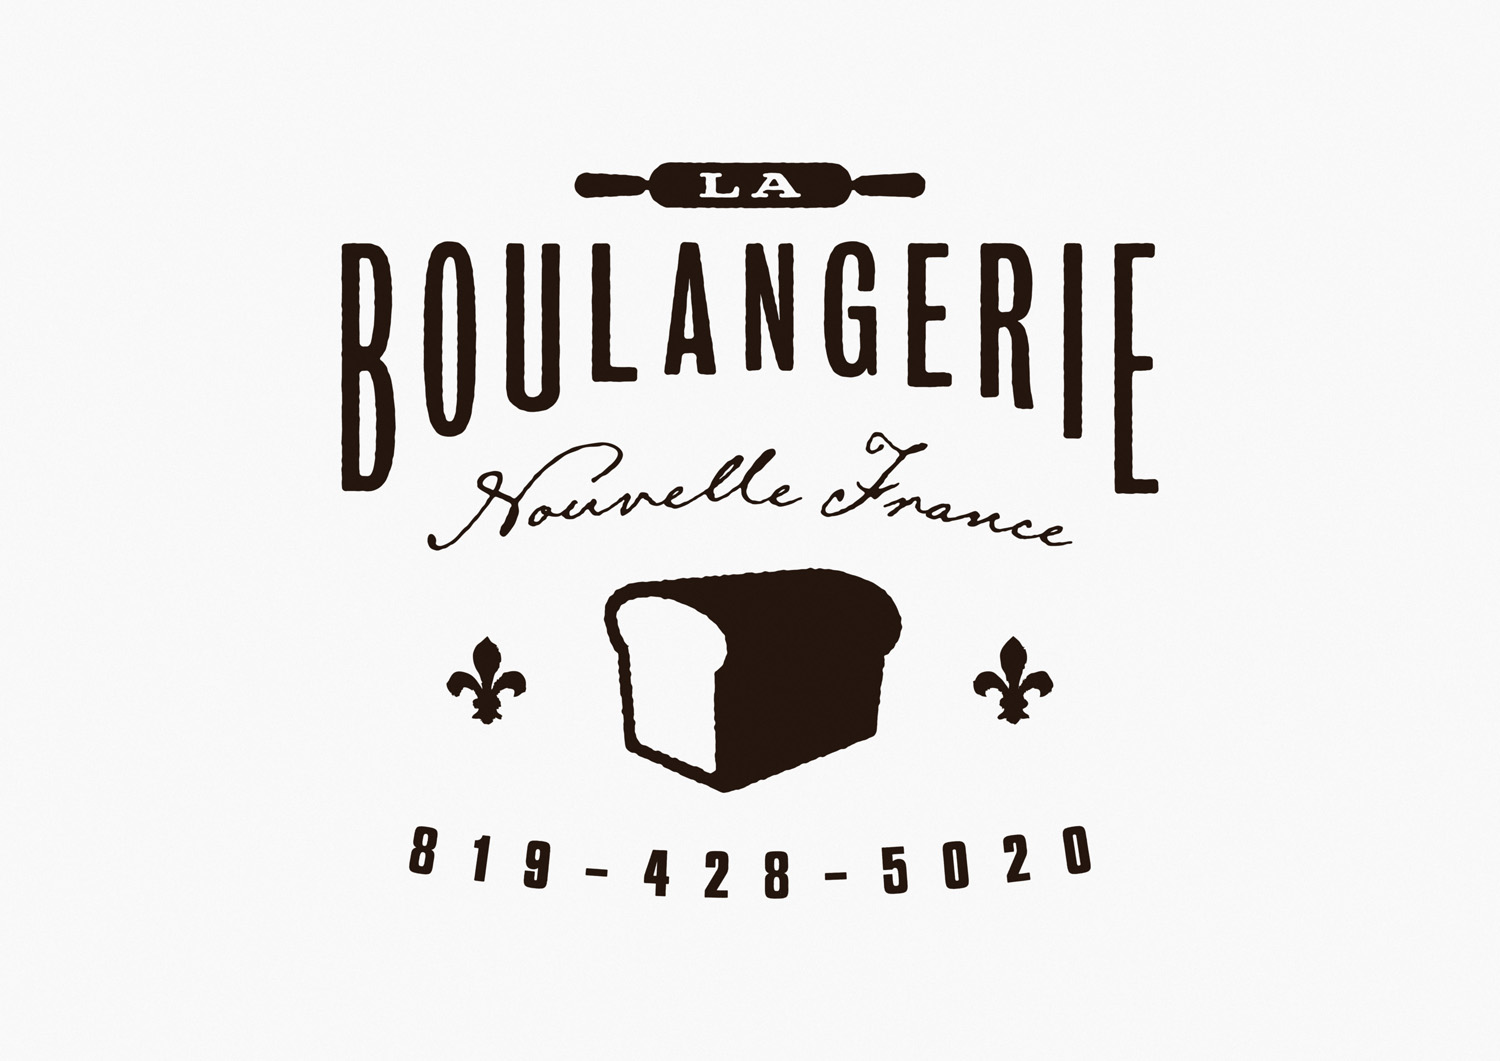 Winter-Hébert: La Boulangerie Nouvelle France